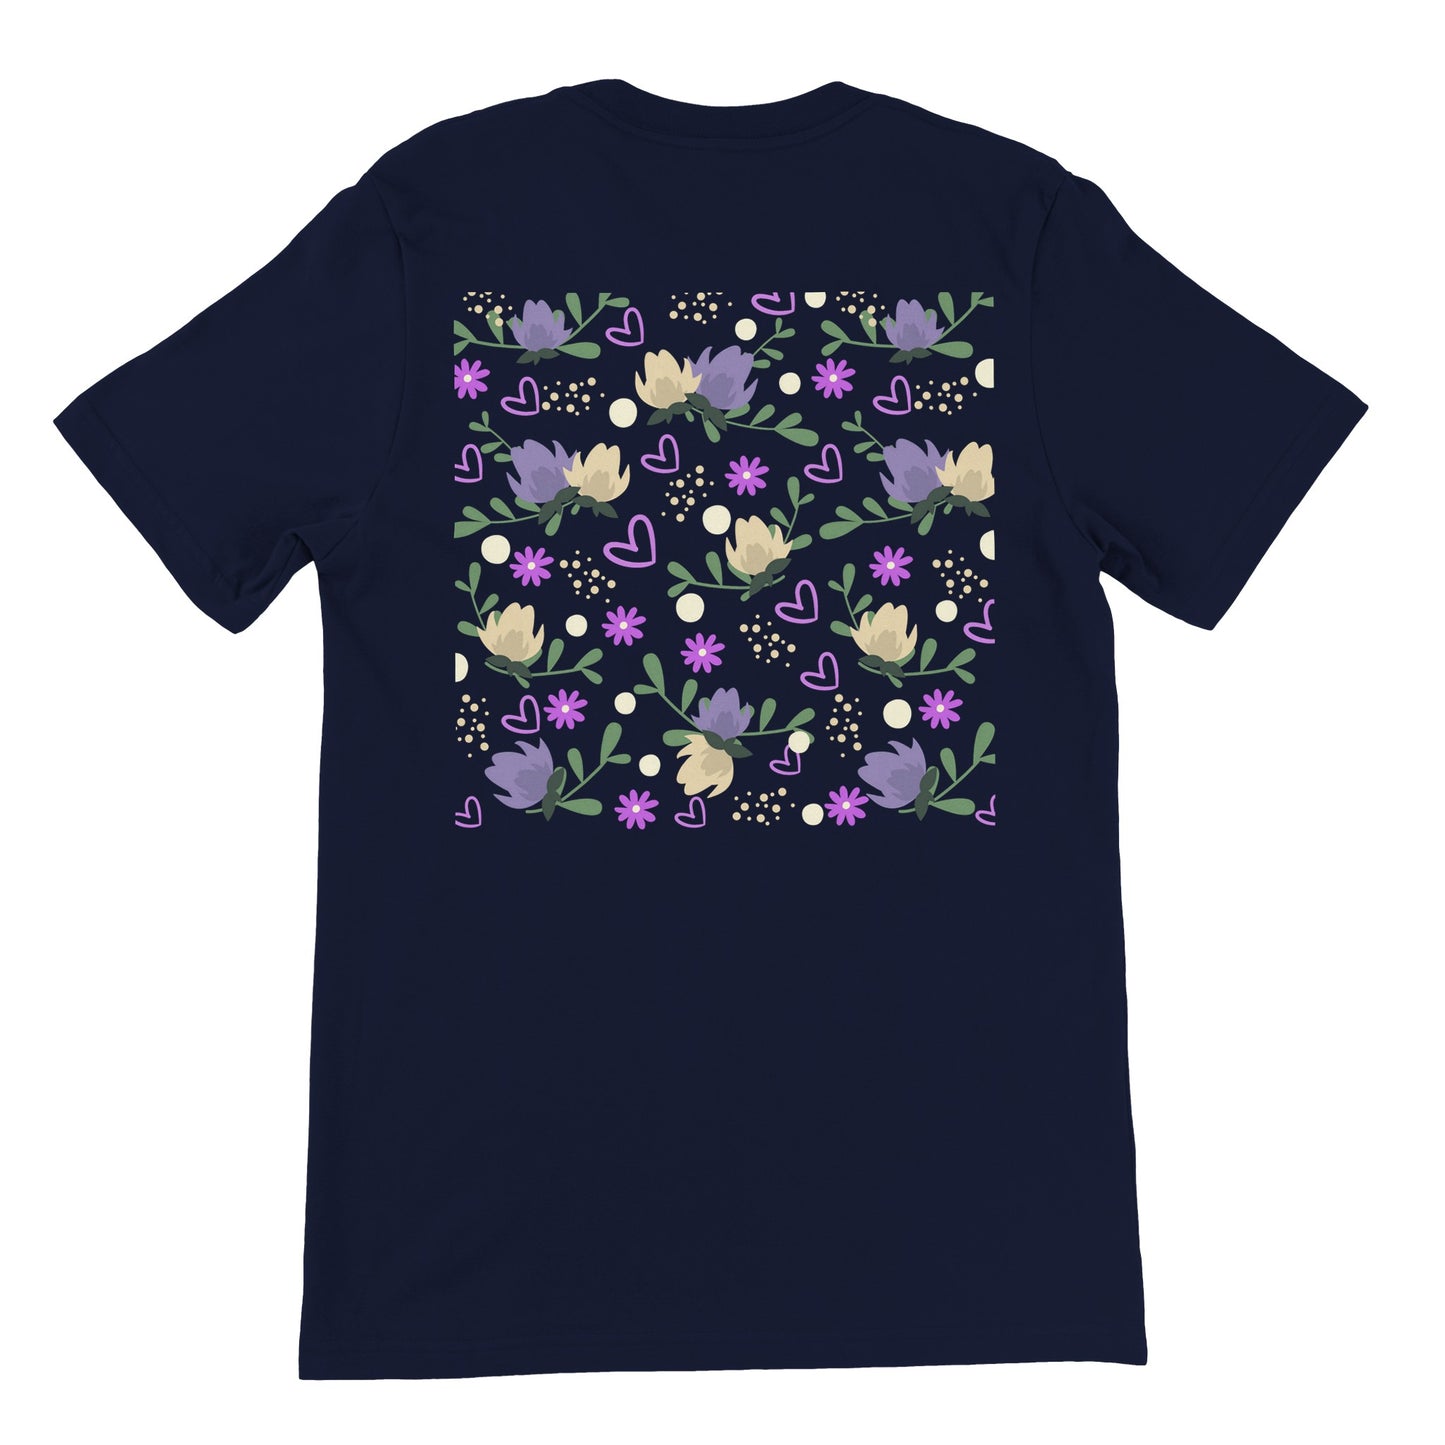 Camiseta original para hombres con diseño floral a la espalda